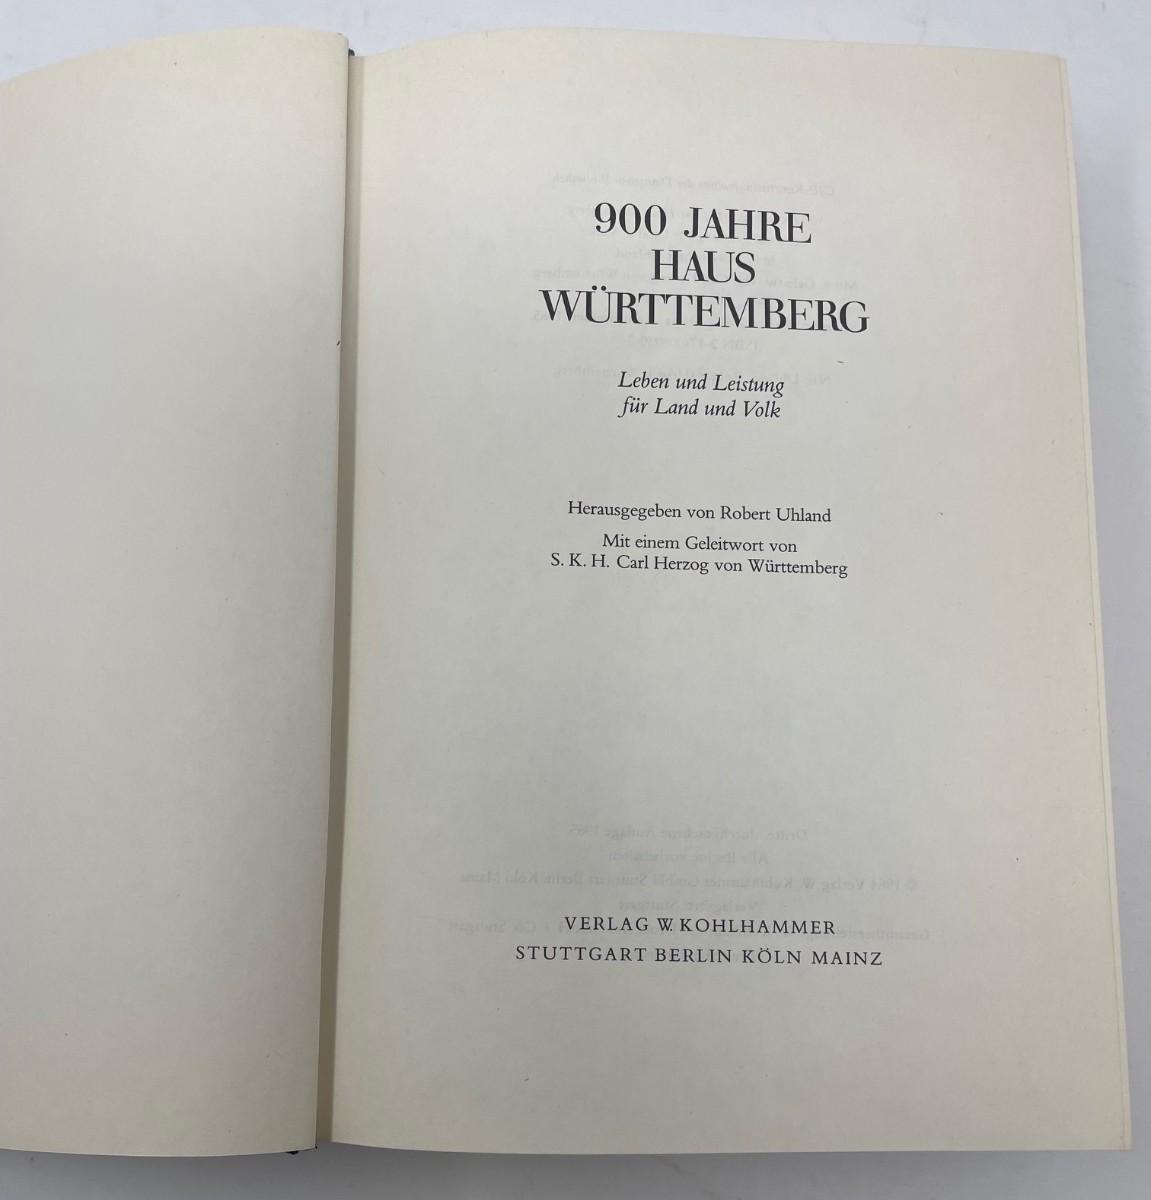 Photo 4 of Book "900 Jahre Hus Wurttemberg Herausgegeben Von Robert Uhland" by Kohl Hammer